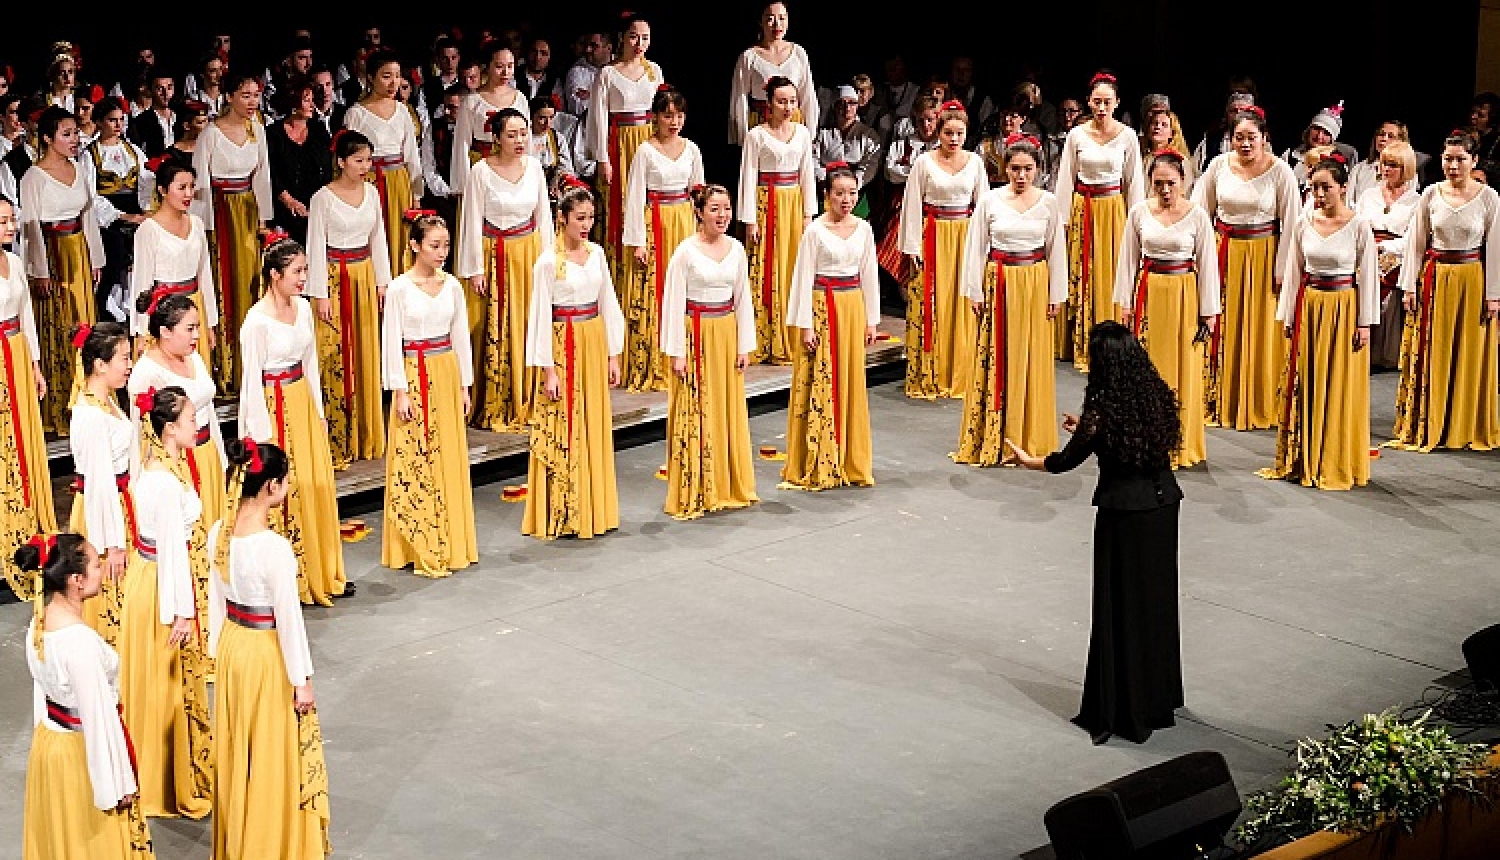 Eiropas koru olimpiādes reģionālais koncerts notiks arī Liepājā